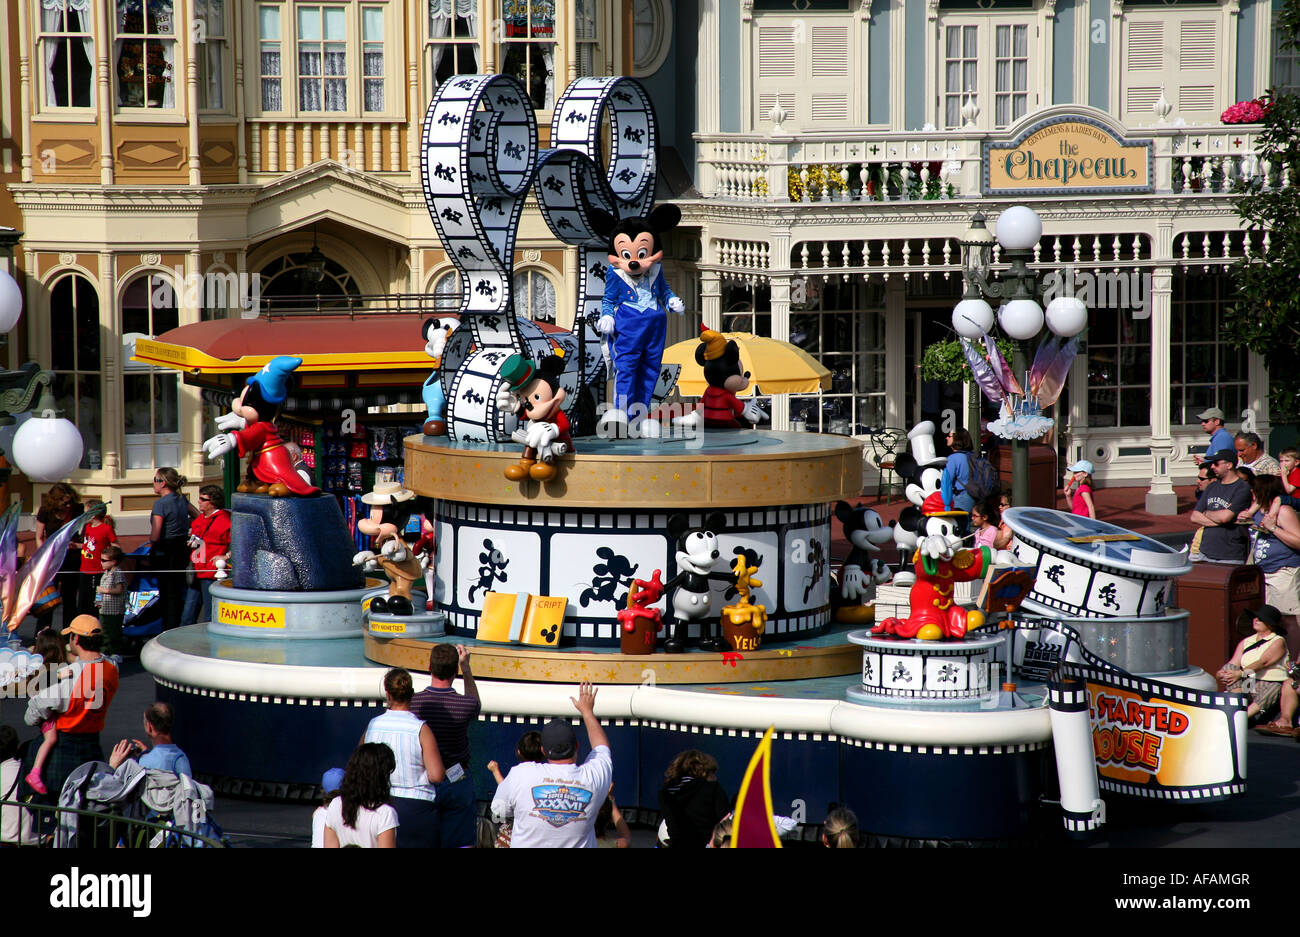 Epcot Center Walt Disney World Orlando Florida during a Mickey Mouse parade Stock Photo